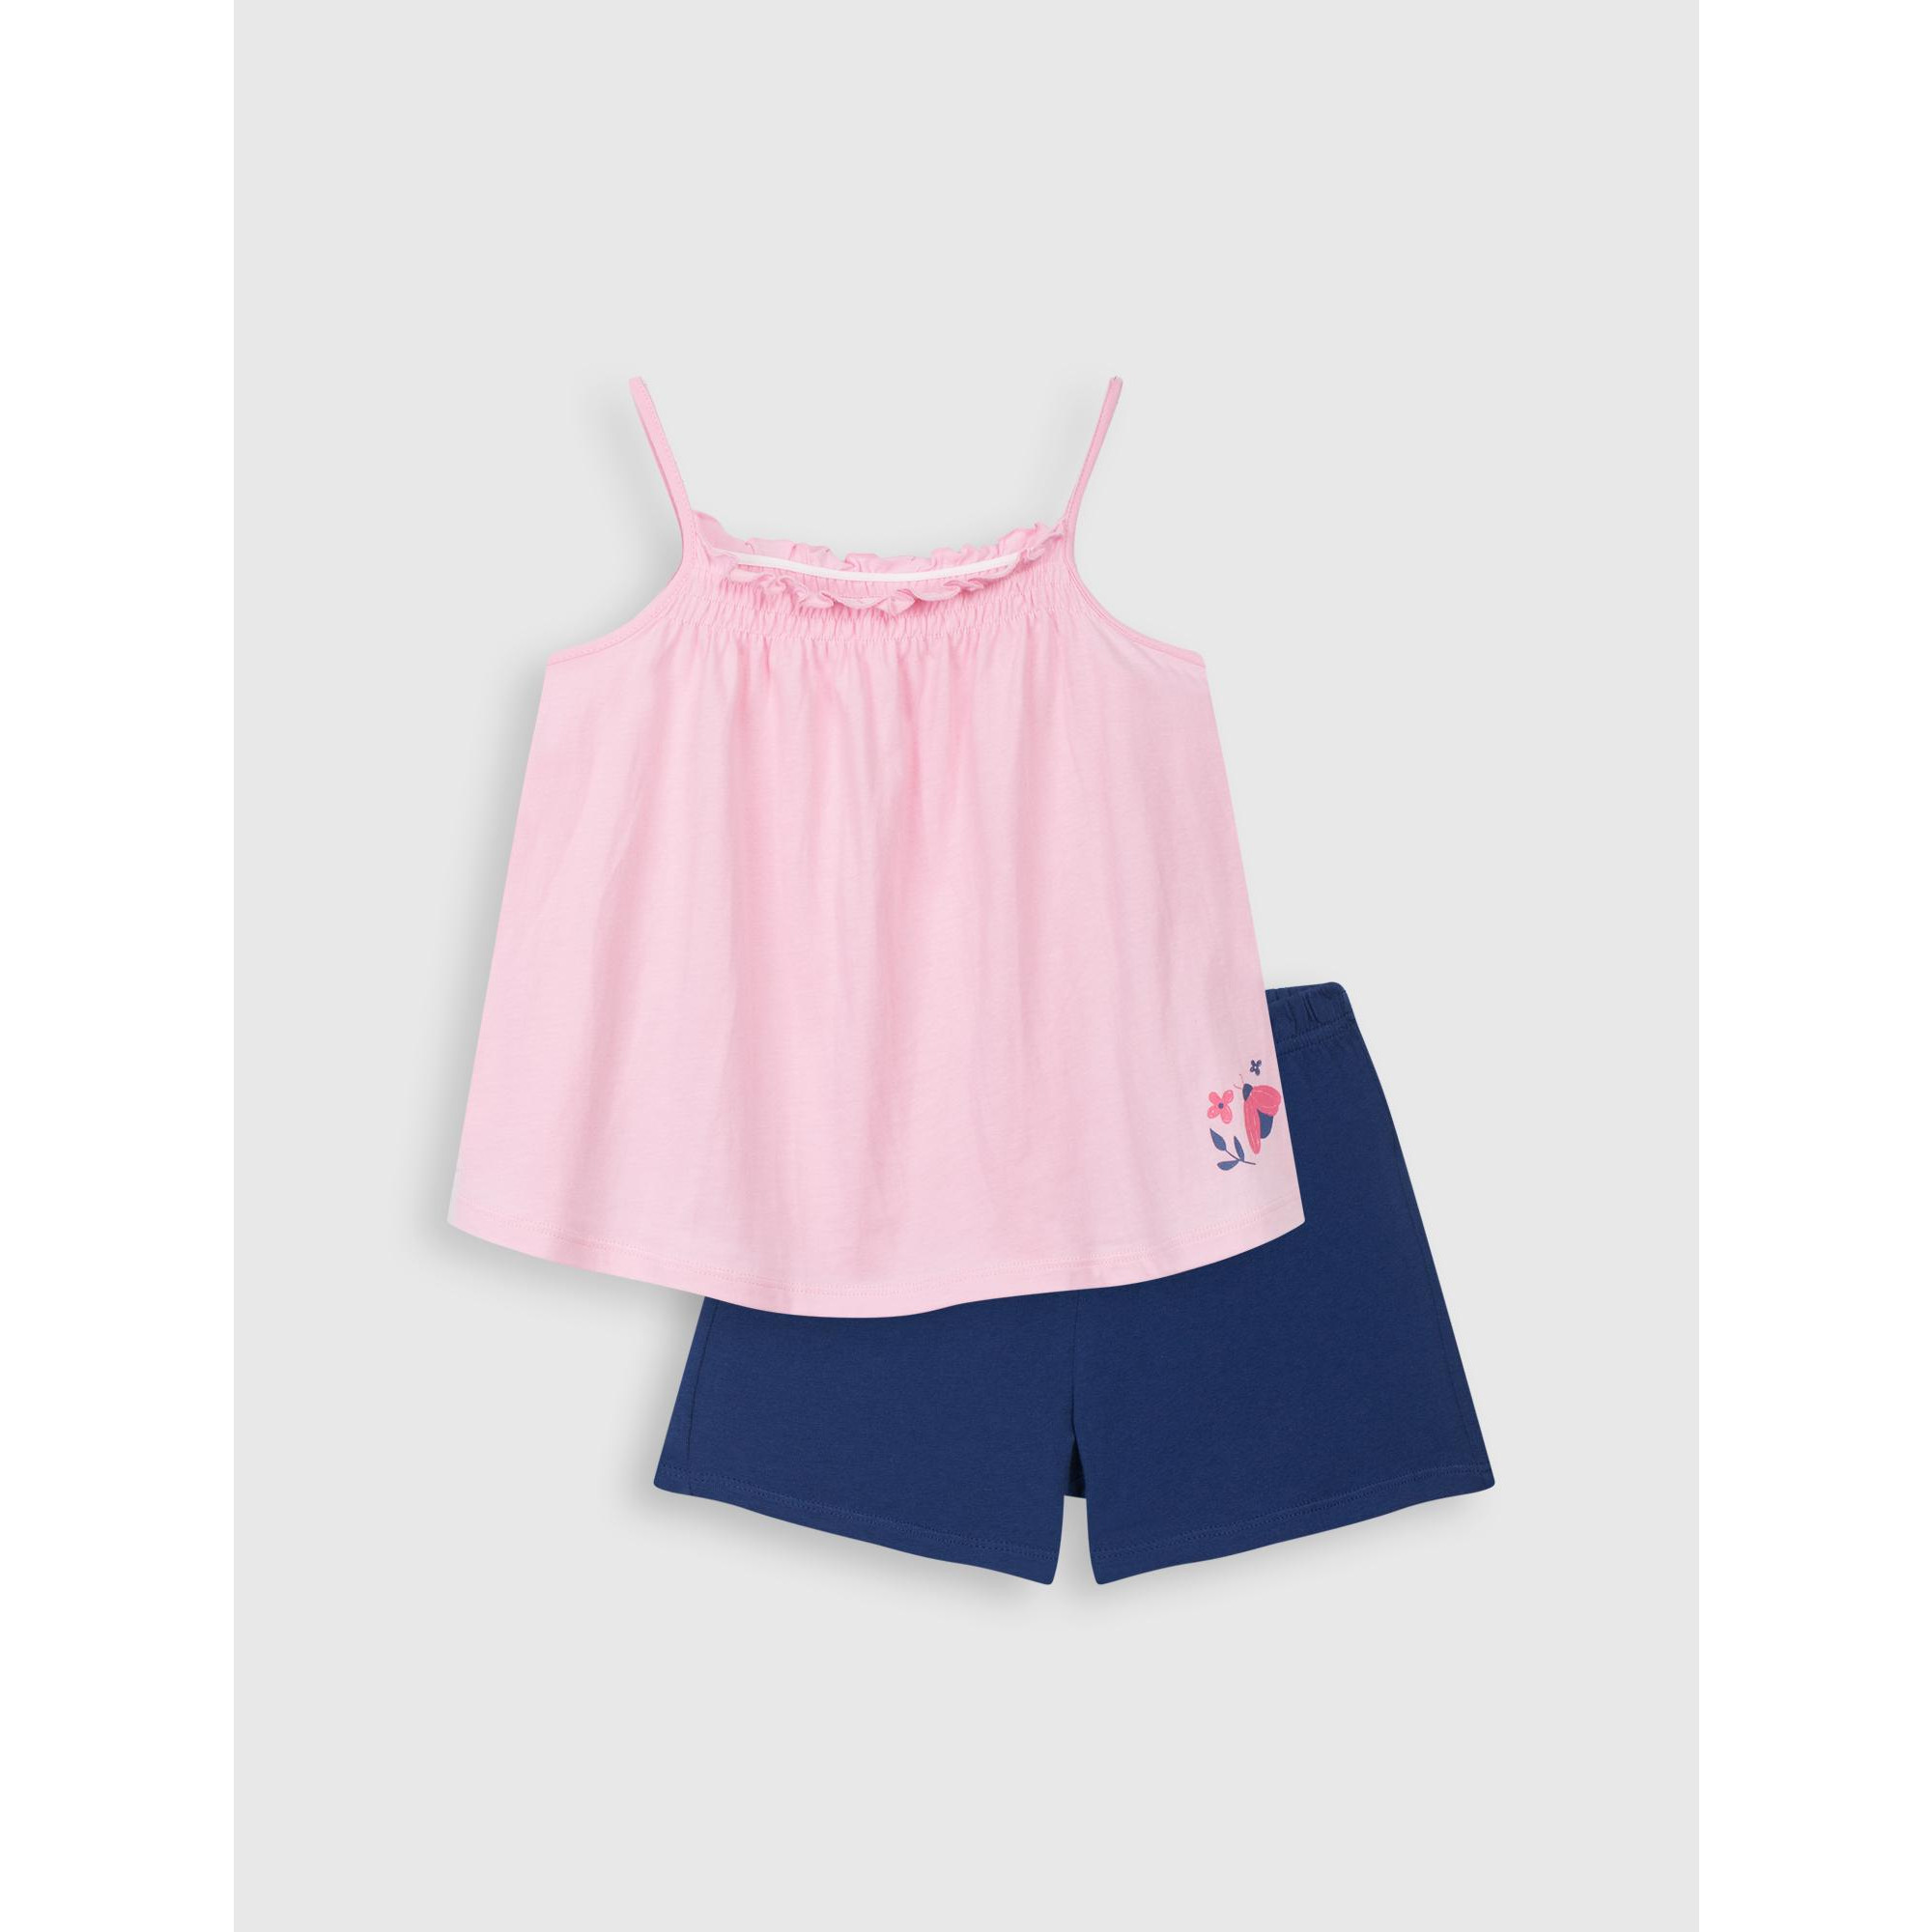 Bộ quần áo mặc nhà cotton cho bé gái CANIFA - 1LS21S001